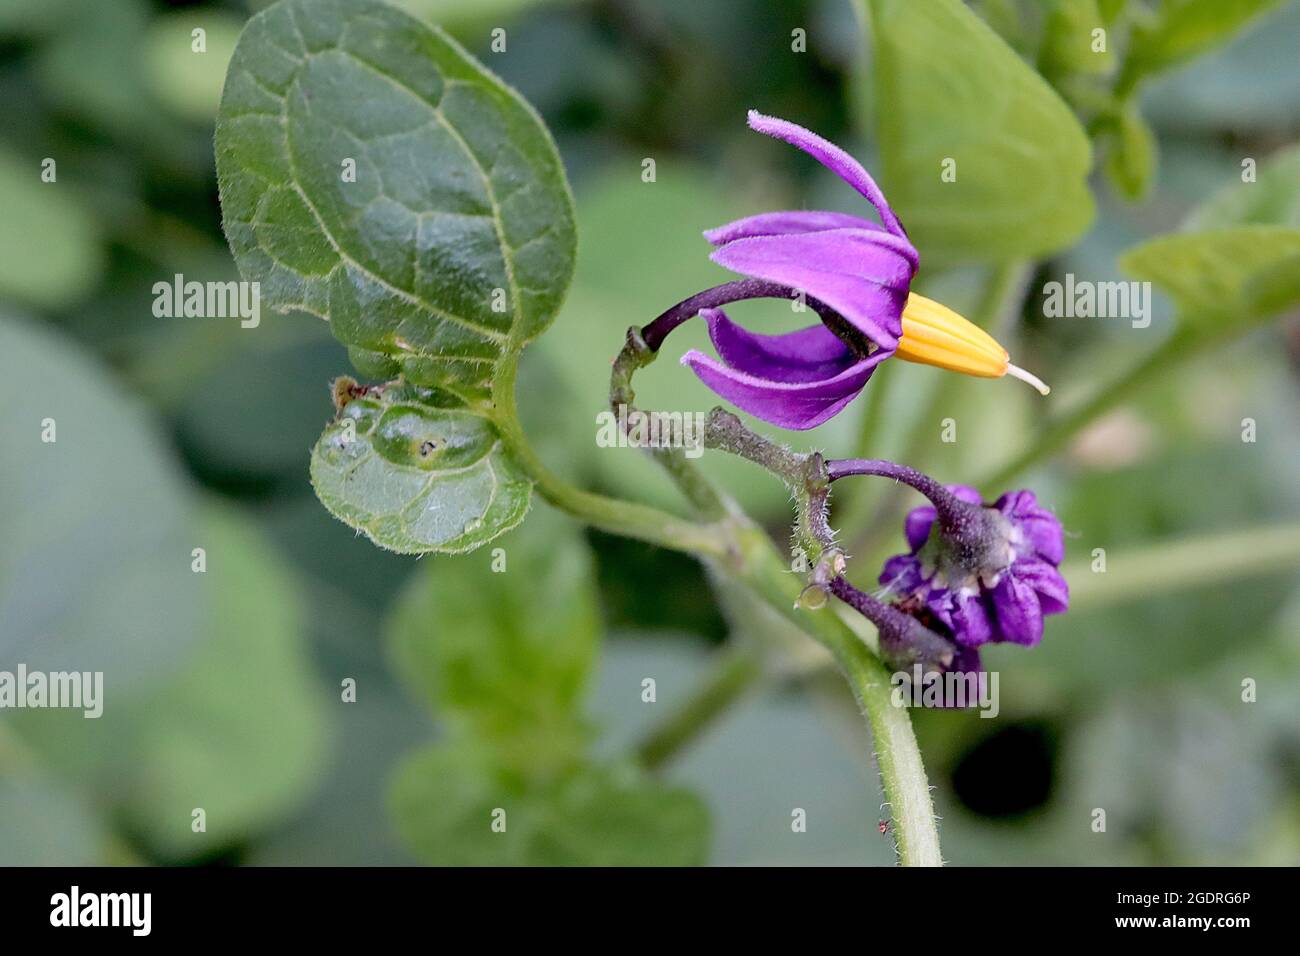 Solanum dulcamara Sombra de noche agridulce – flores púrpura profundas con pétalos reflejos y estambres amarillos fusionados, hojas grandes lobuladas, julio, Inglaterra, Reino Unido Foto de stock